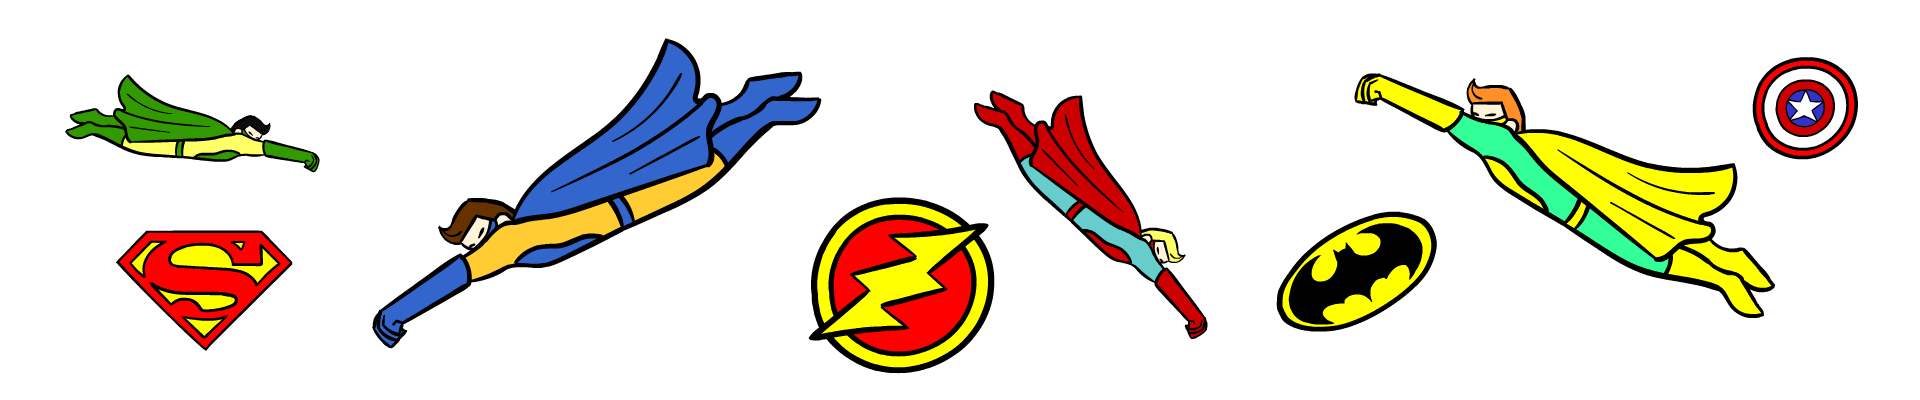 Alcuni supereroi con dei loghi della Marvel e della DC